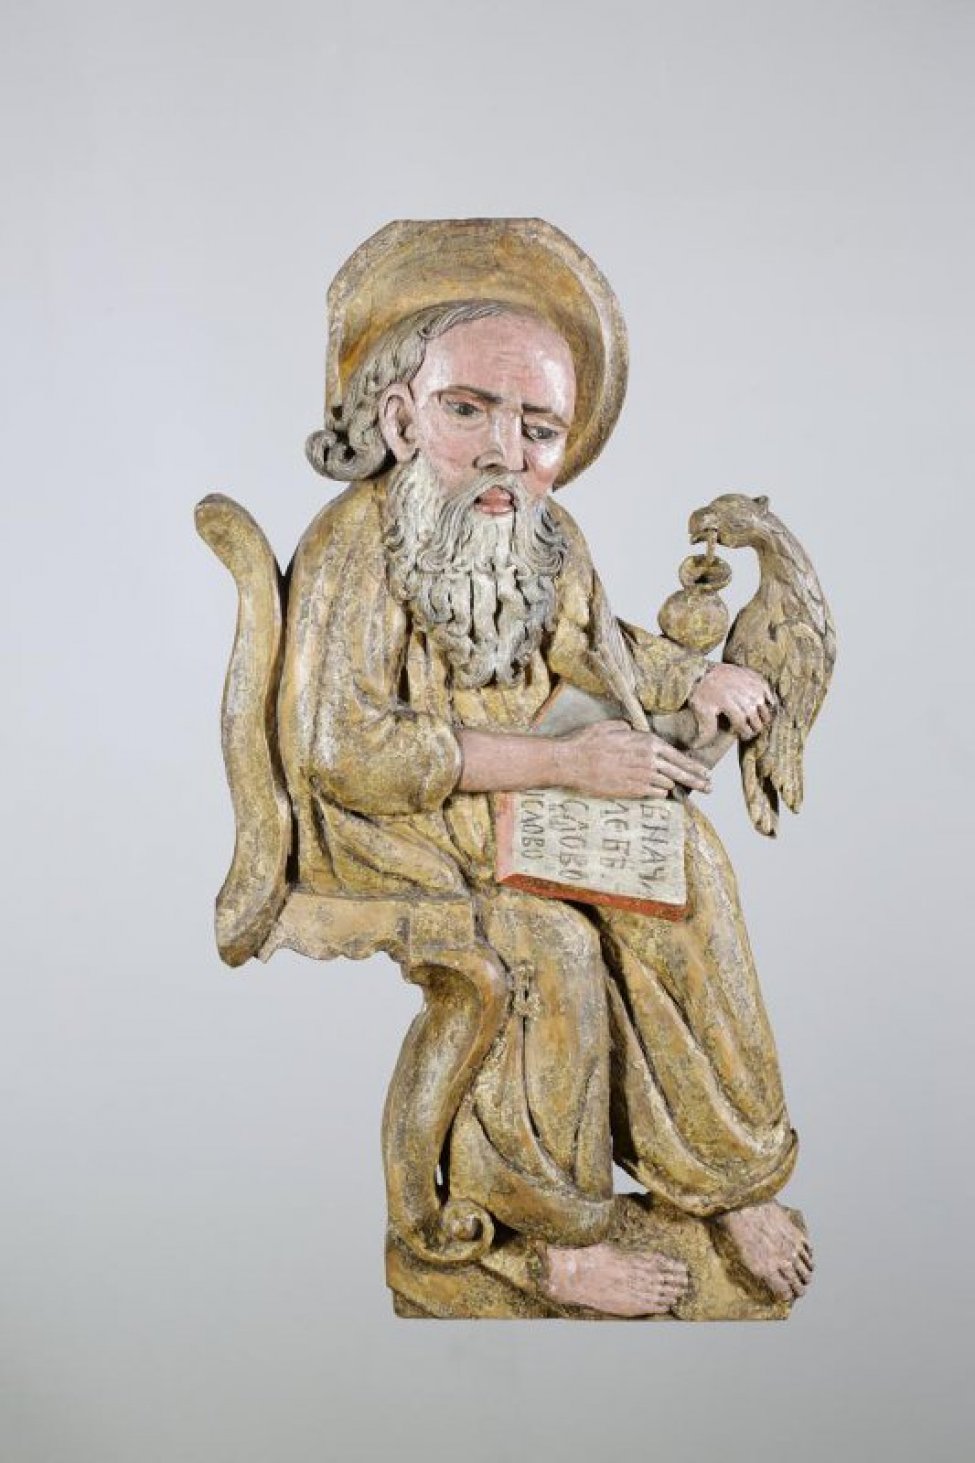 Евангелист Иоанн изображен сидящим, левой рукой поддерживает книгу со словами: "В начале бе слово...". На голове - нимб.